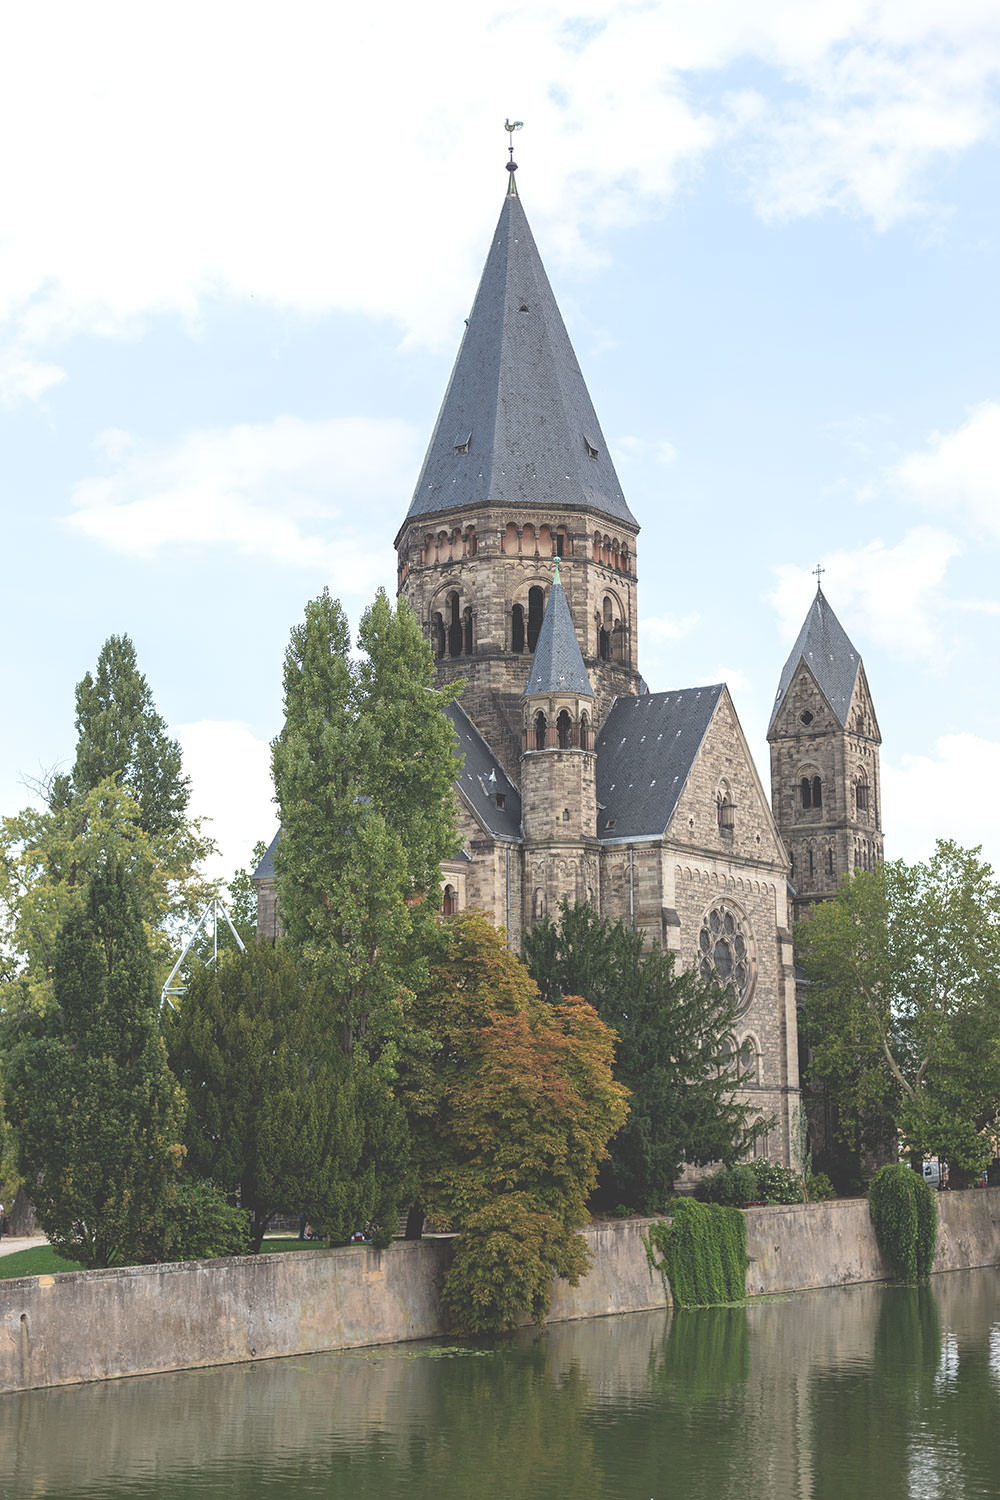 Tagesausflug nach Metz und Rezept für Quiche Lorraine (Lothringer Speckkuchen) | Temple Neuf an der Mosel in Metz | moeyskitchen.com